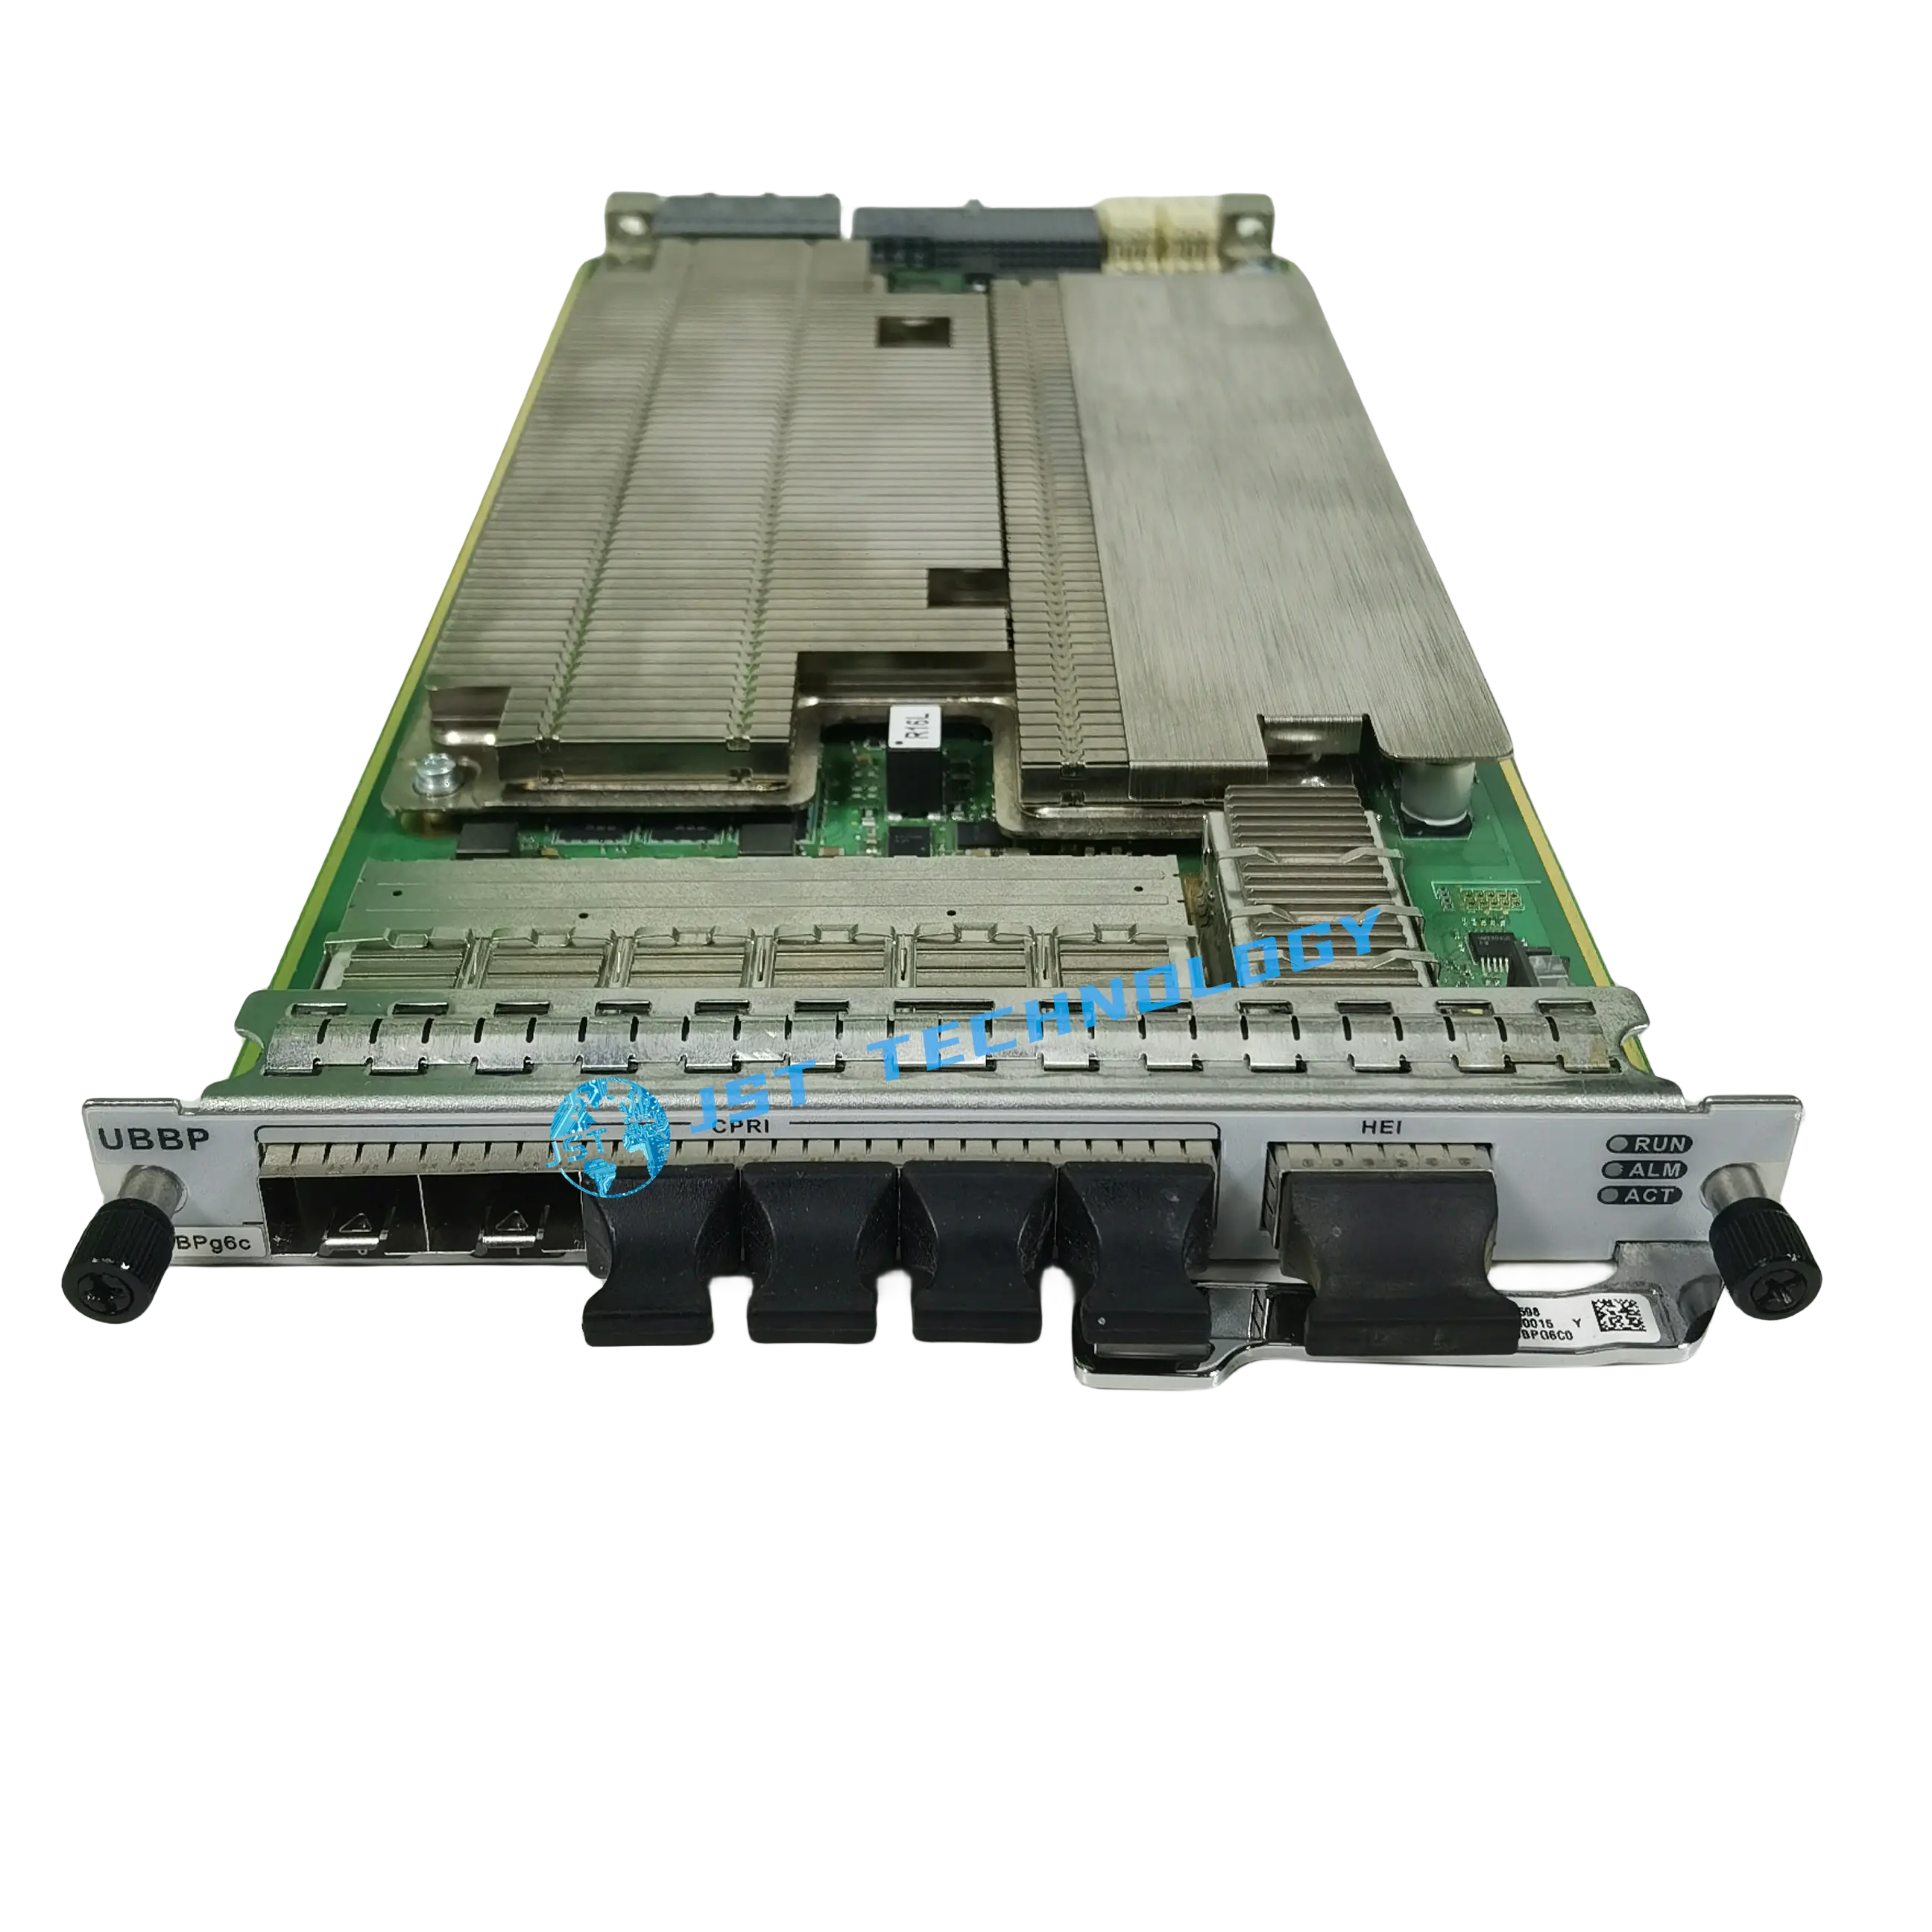 Unidad de placa de producción UBBPg6c WD24UBBPg6cP Placa de interfaz de procesamiento de banda base multimodo g6c UBBPg6c 03059822